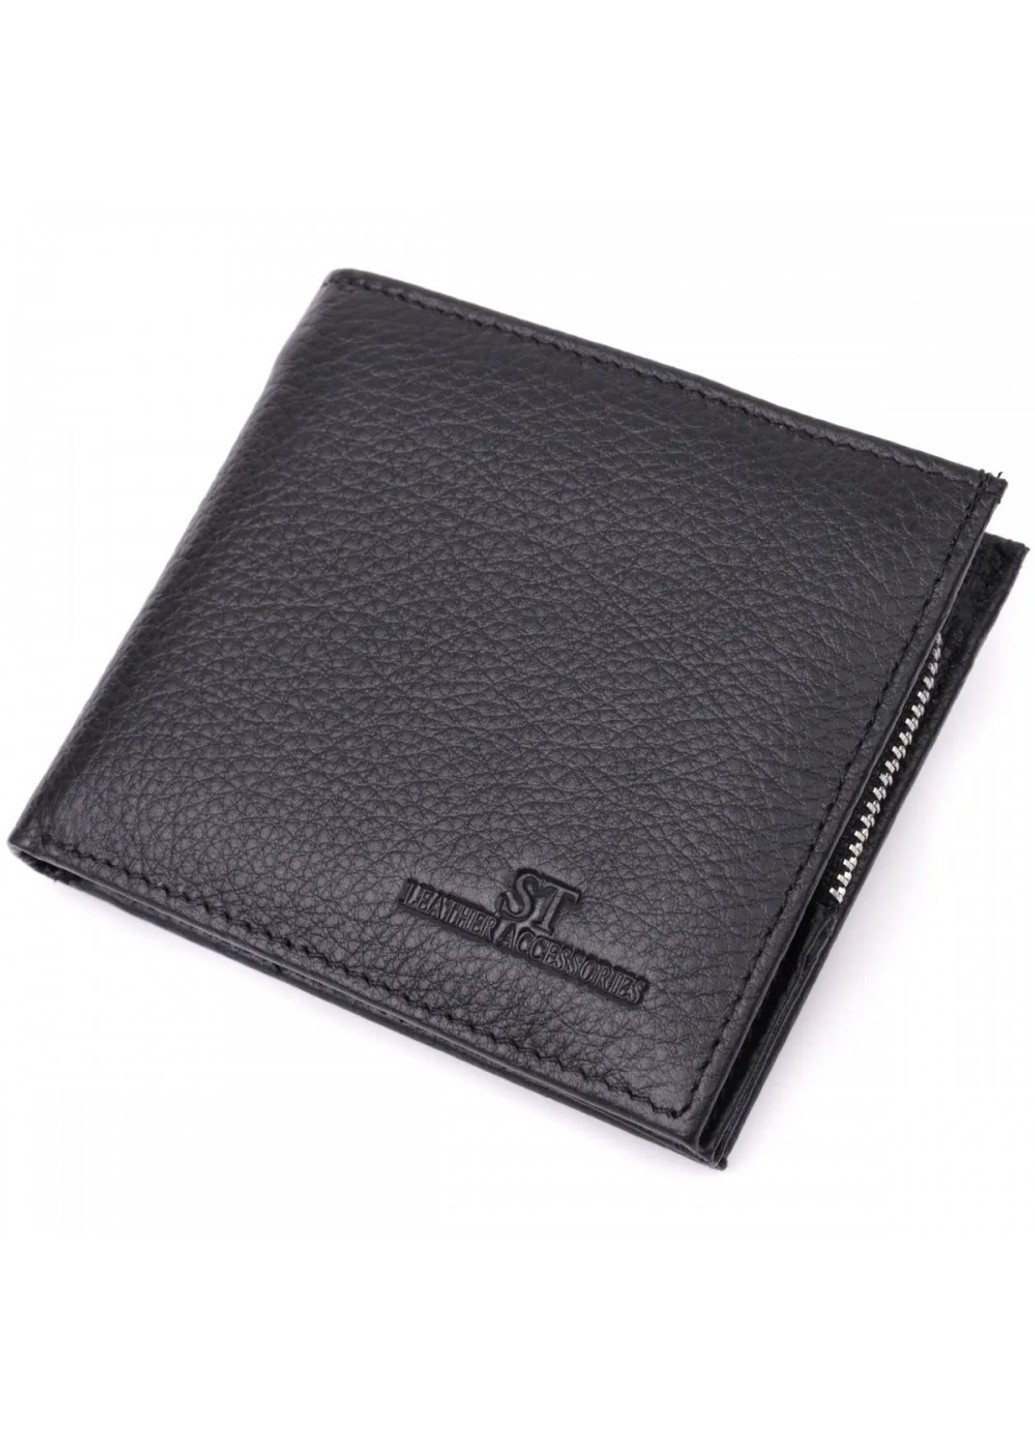 Чоловічий шкіряний гаманець ST Leather 22458 ST Leather Accessories (277925835)